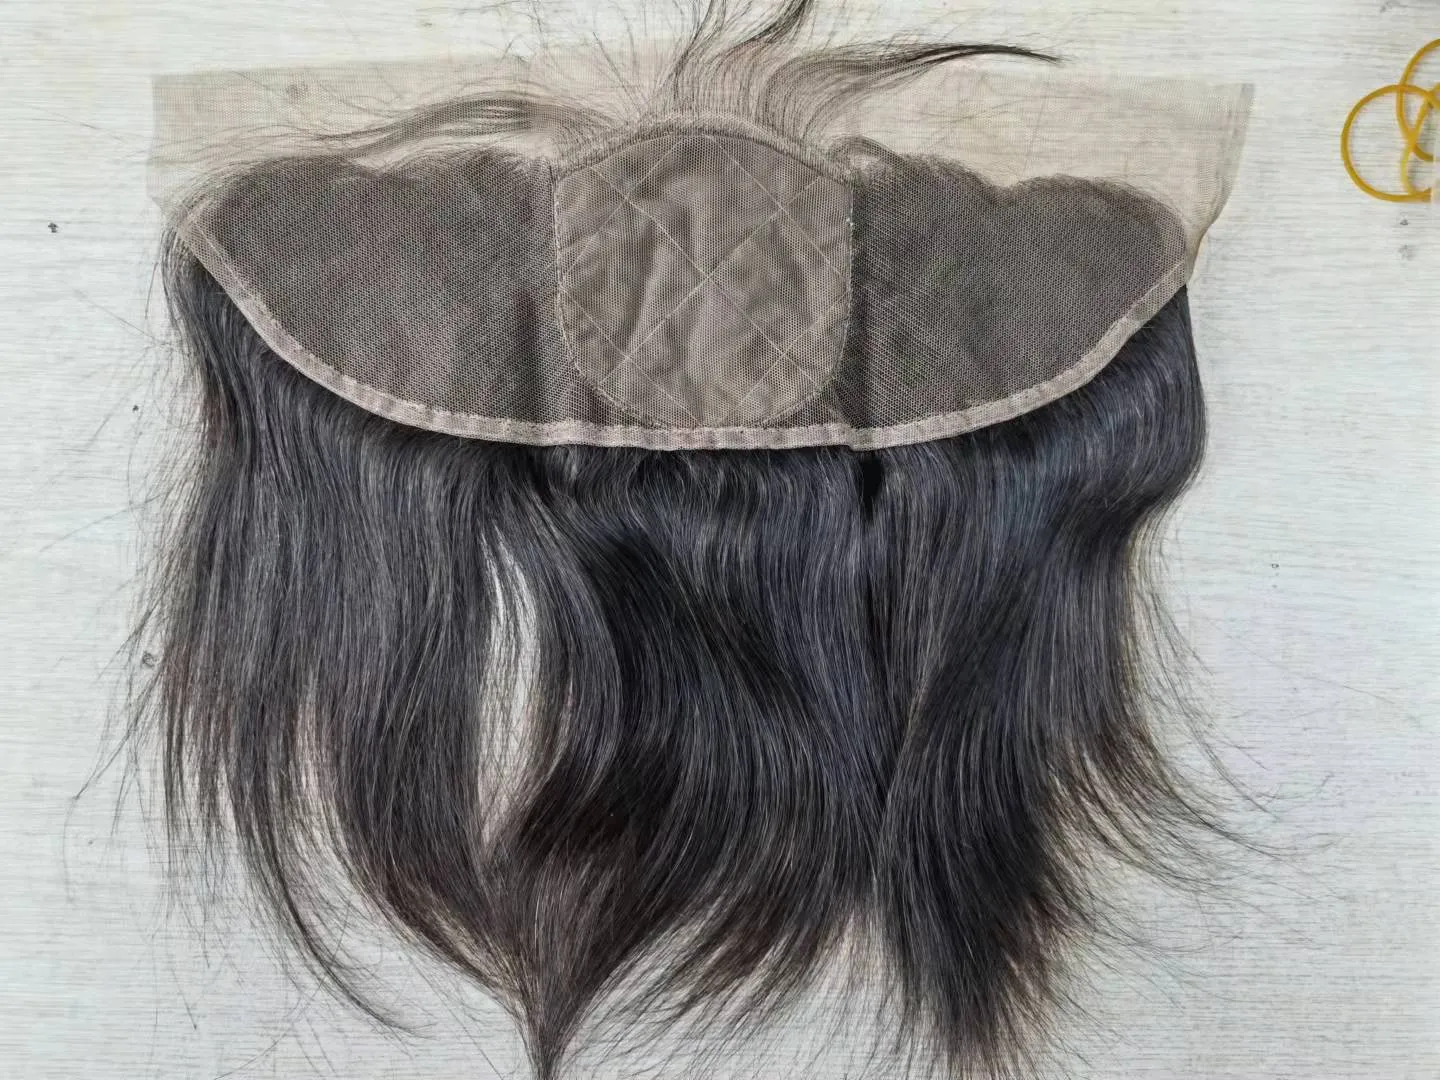 Malaisien soie haut dentelle frontale cheveux humains partie libre dentelle frontale avec frange 13x4 dentelle frontale fermeture noeuds blanchis